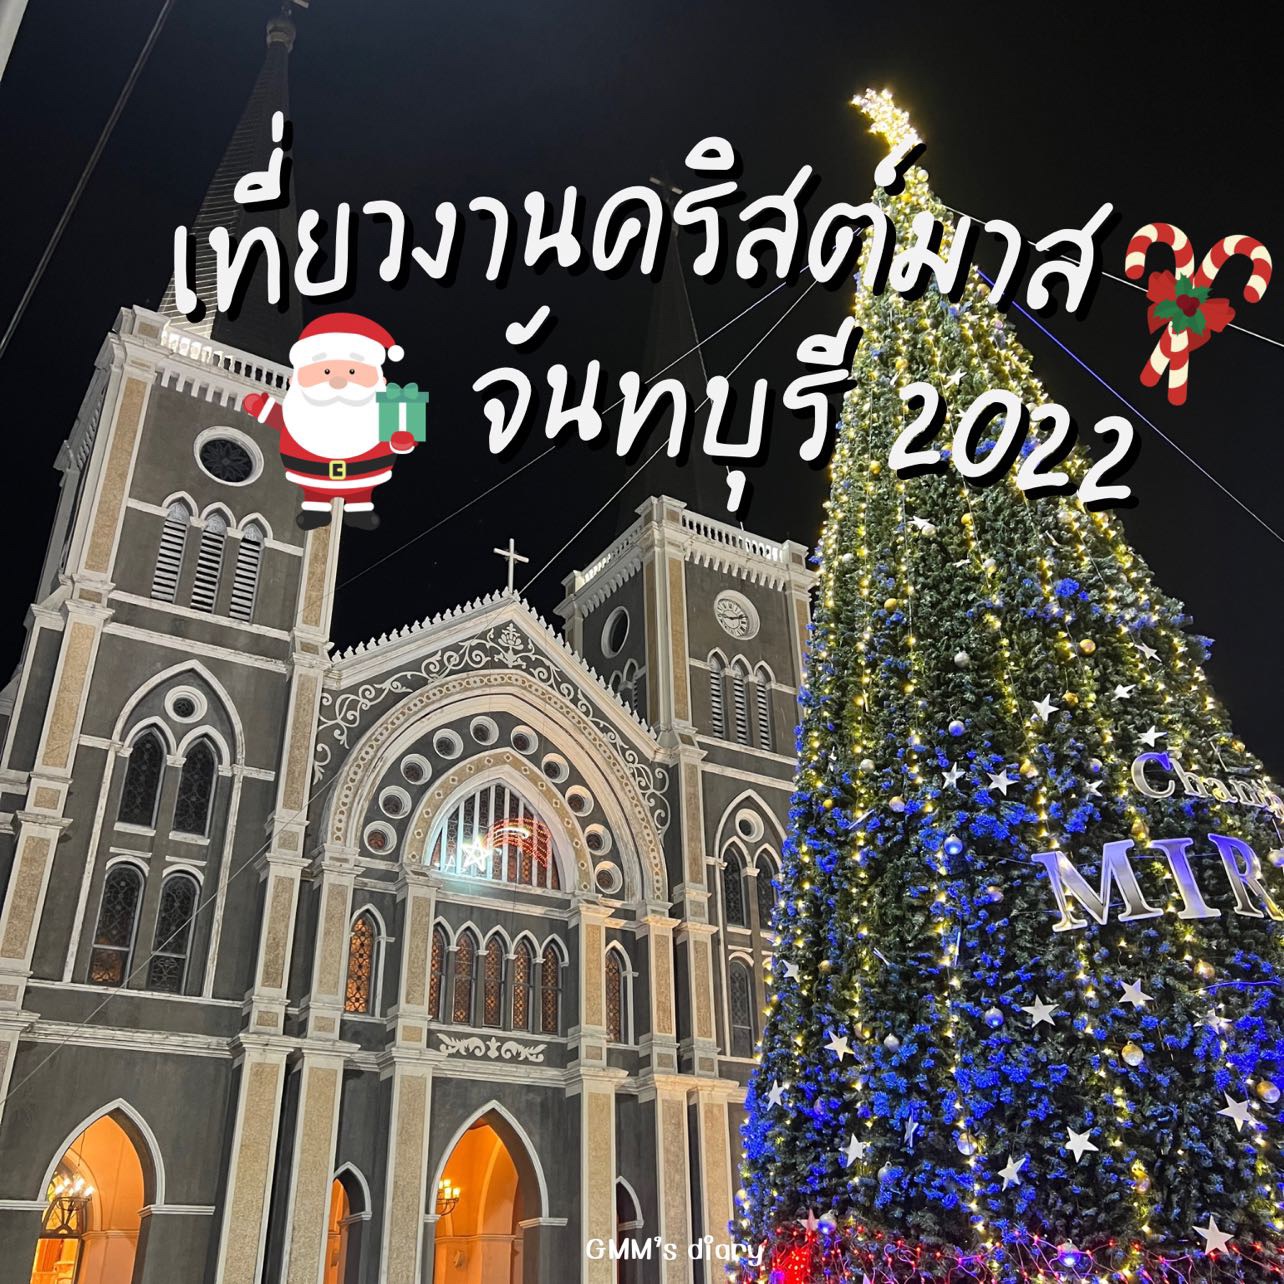 在泰国最美丽的教堂尖竹汶府的圣诞节旅行